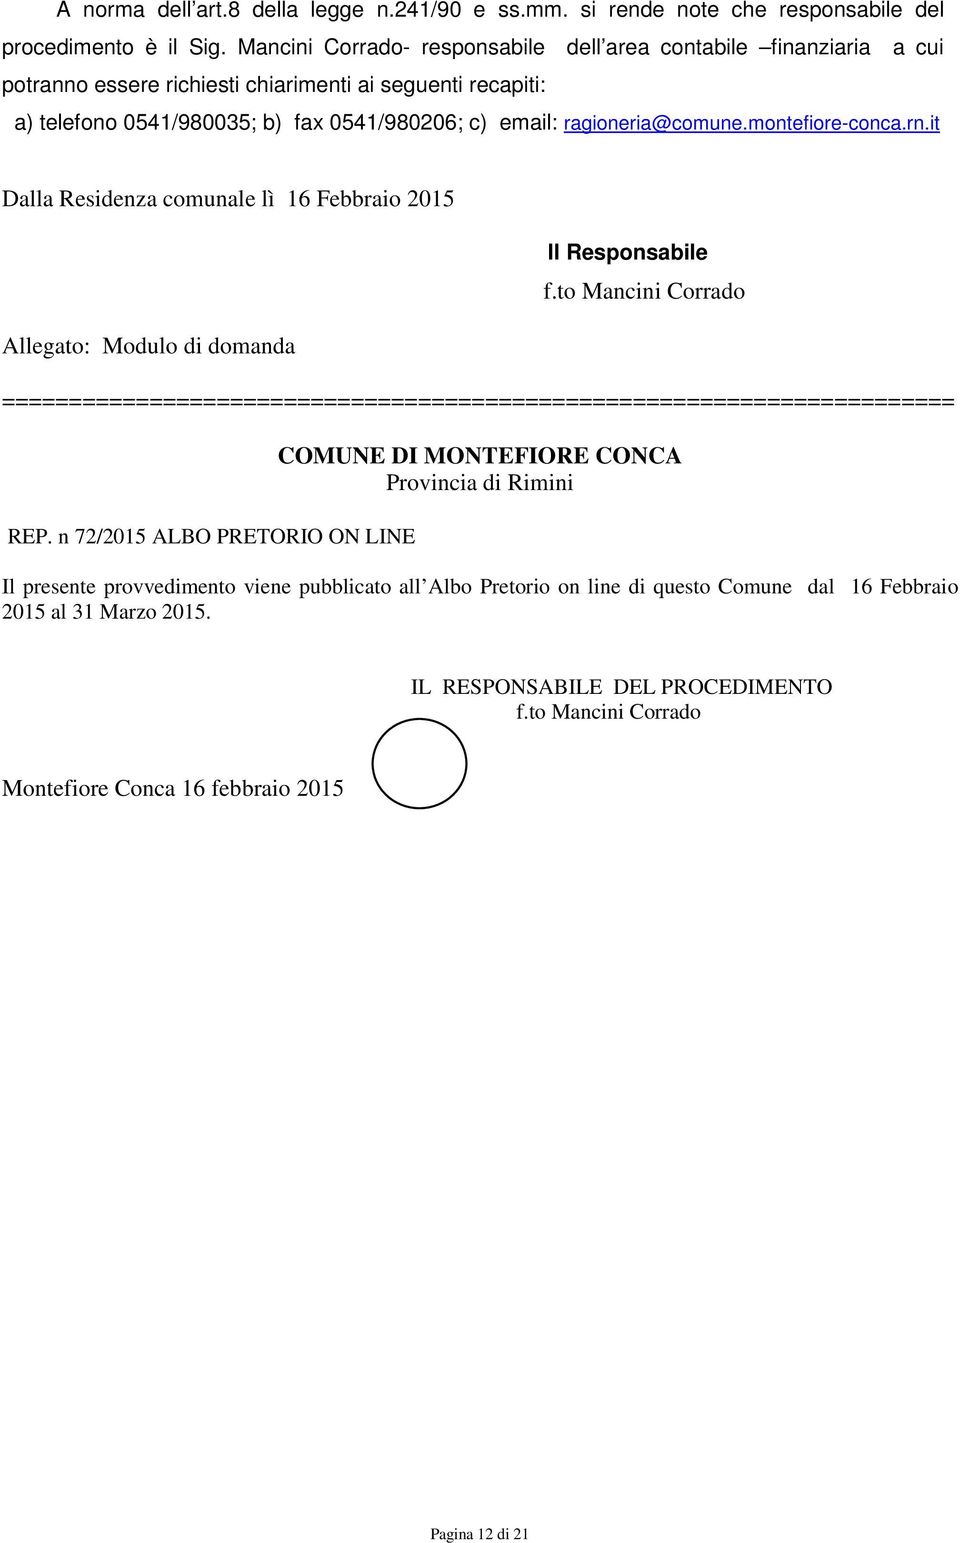 ragioneria@comune.montefiore-conca.rn.it Dalla Residenza comunale lì 16 Febbraio 2015 Allegato: Modulo di domanda Il Responsabile f.